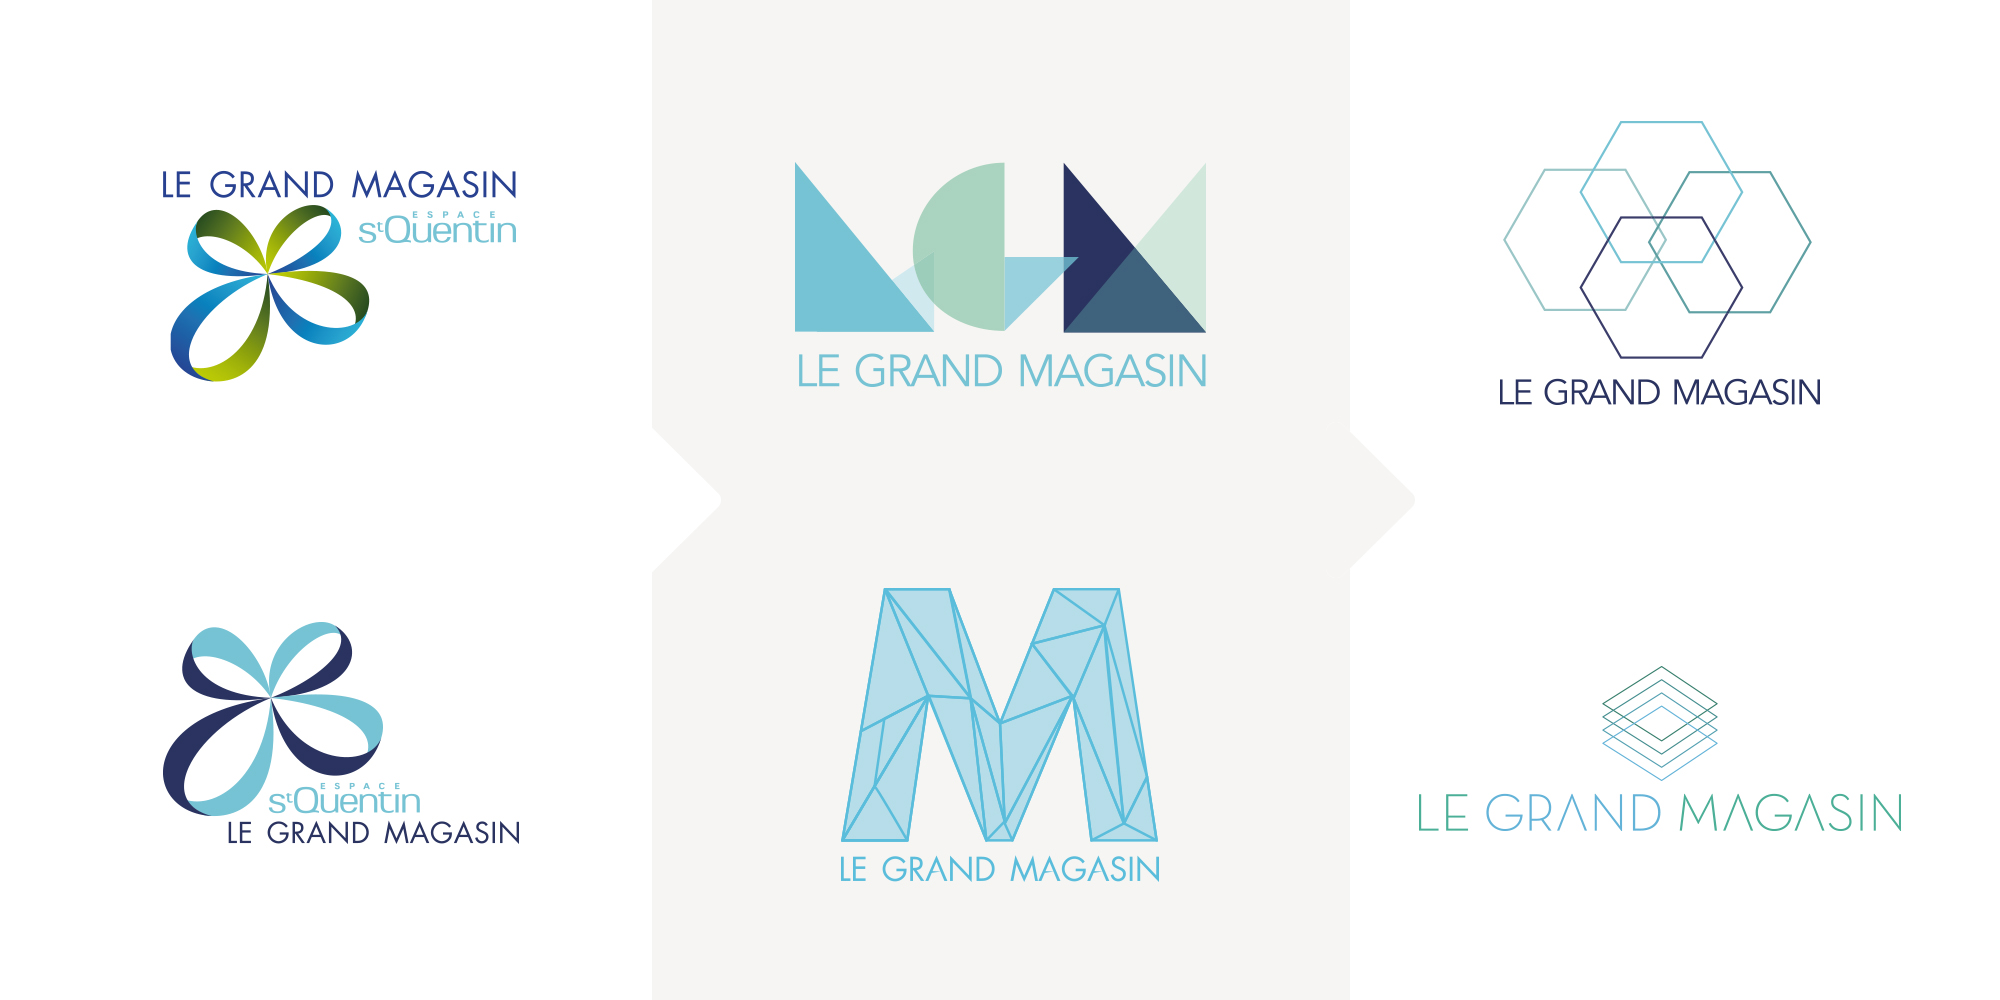 Logos - identité visuelle - IDDP - Hammerson - Le Grand Magasin